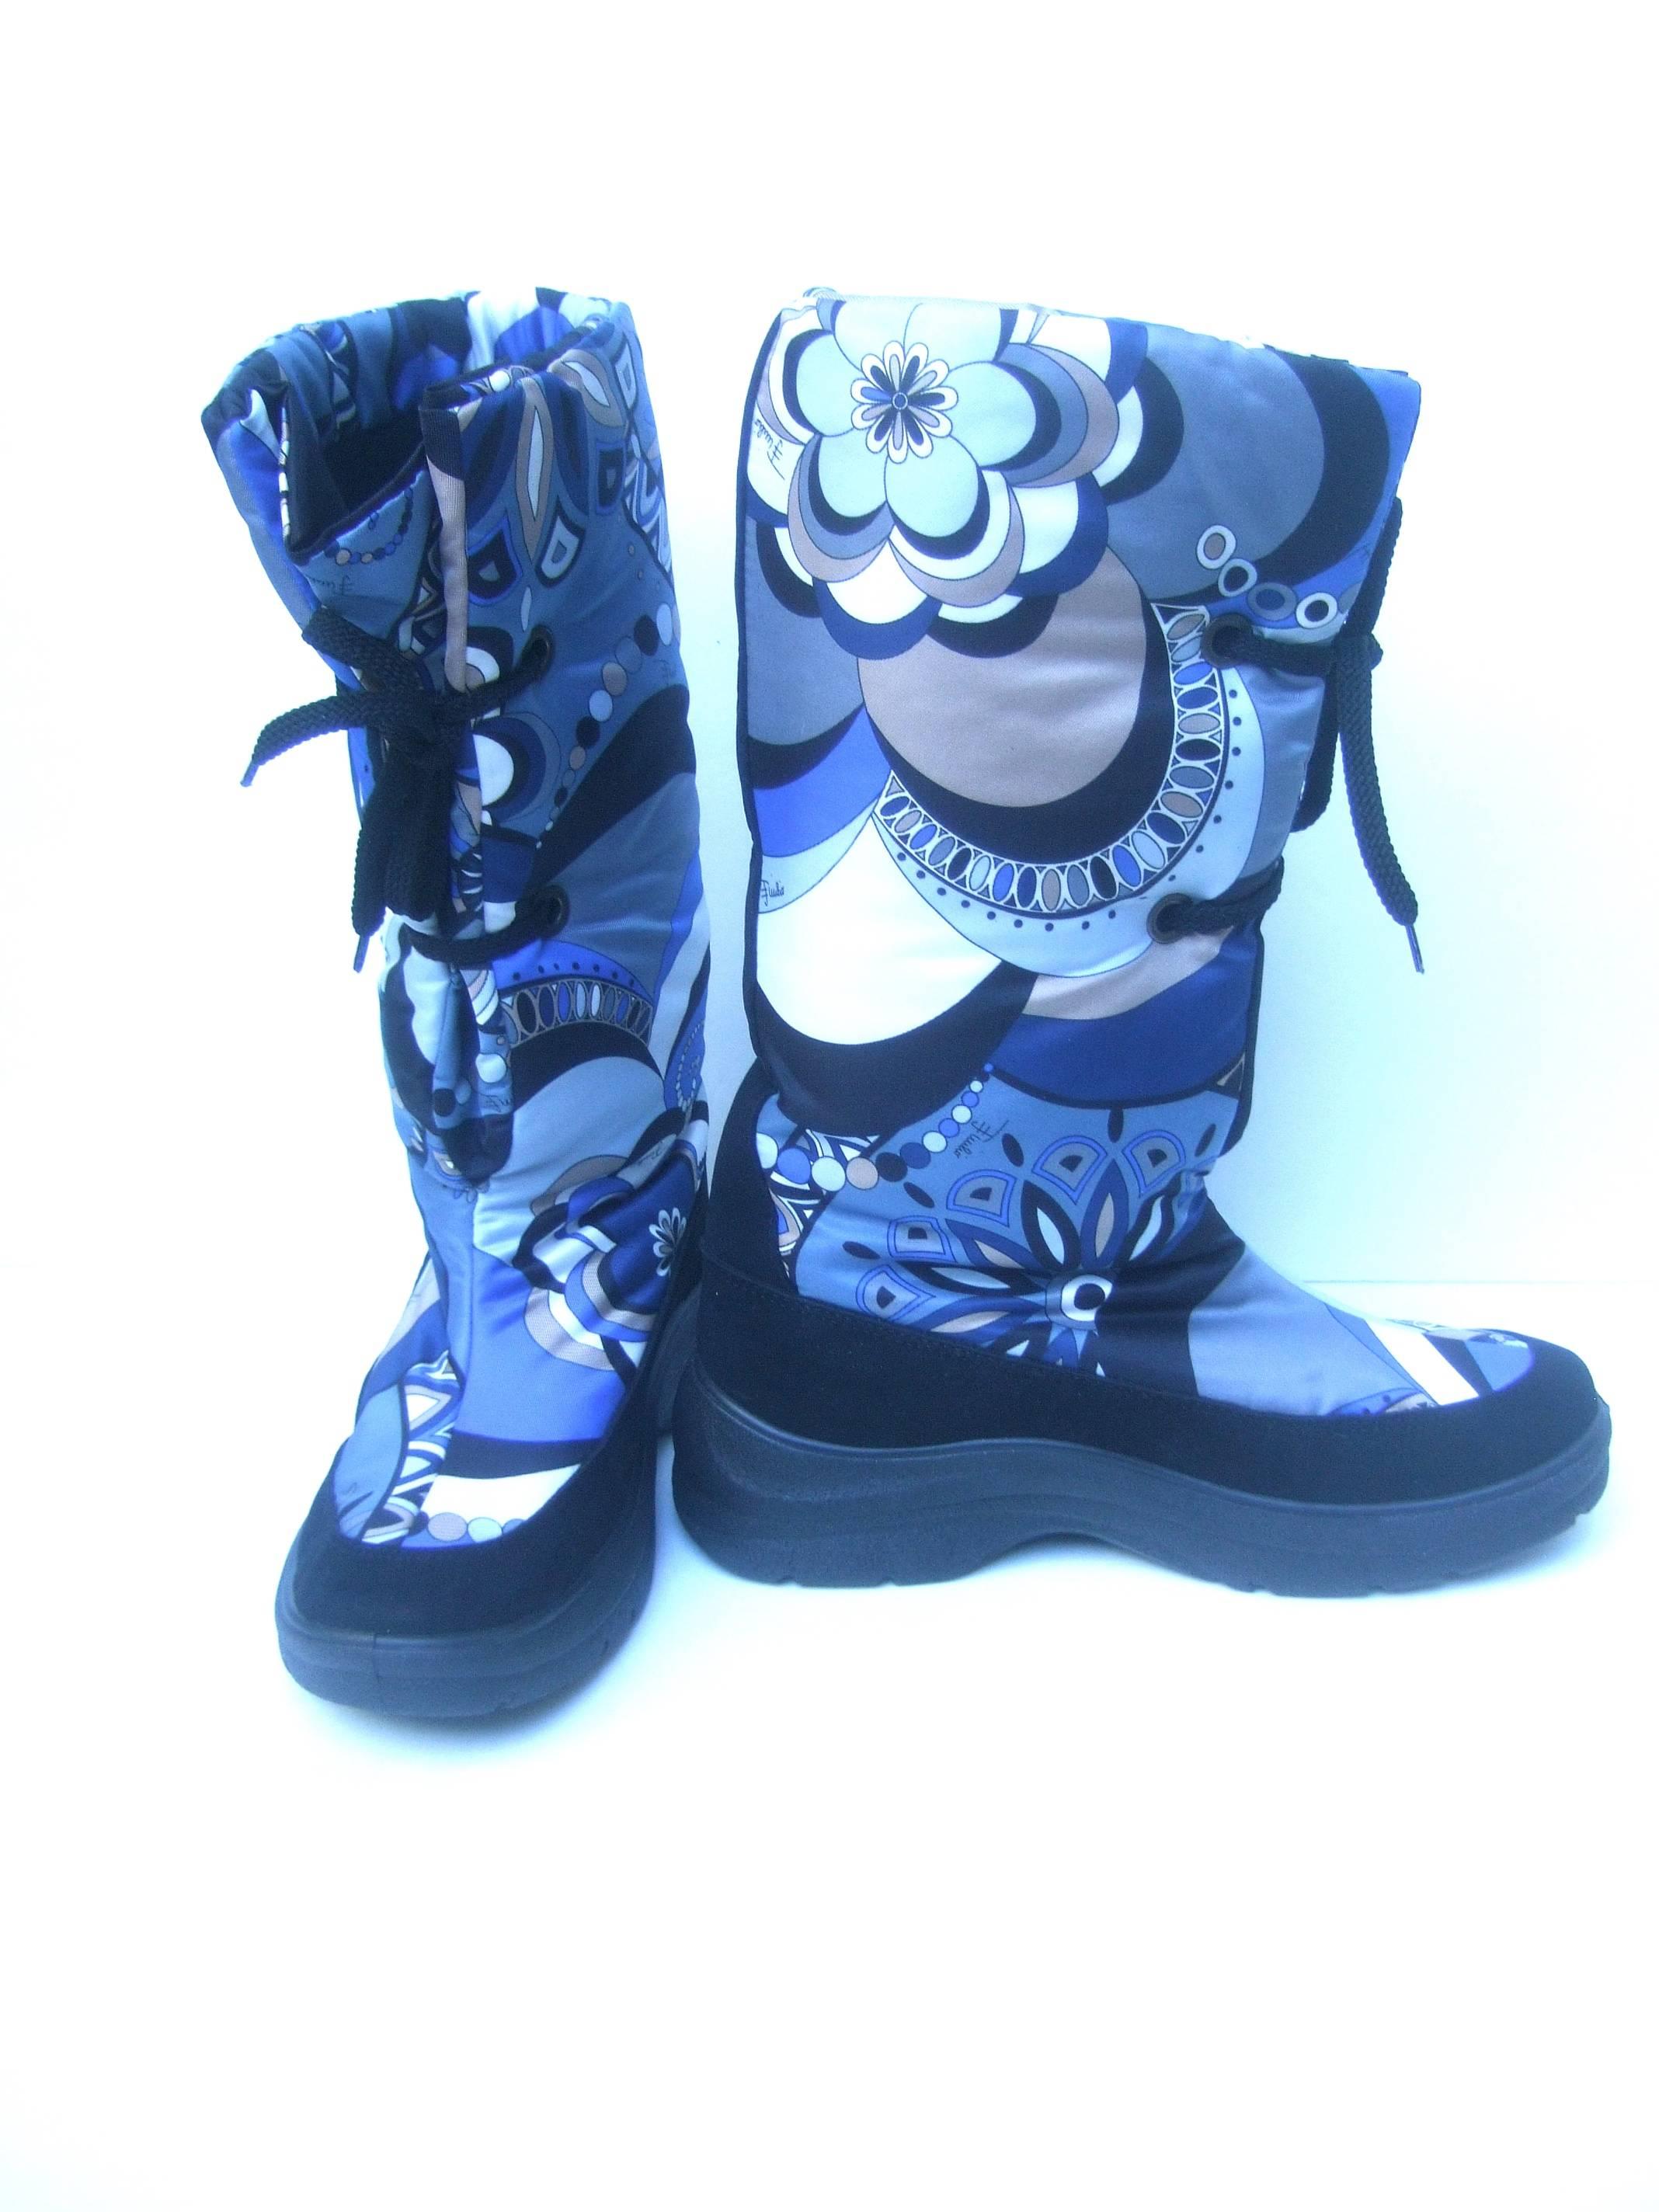 Emilio Pucci Bold Nylon Print Ski Boots Size 40  1